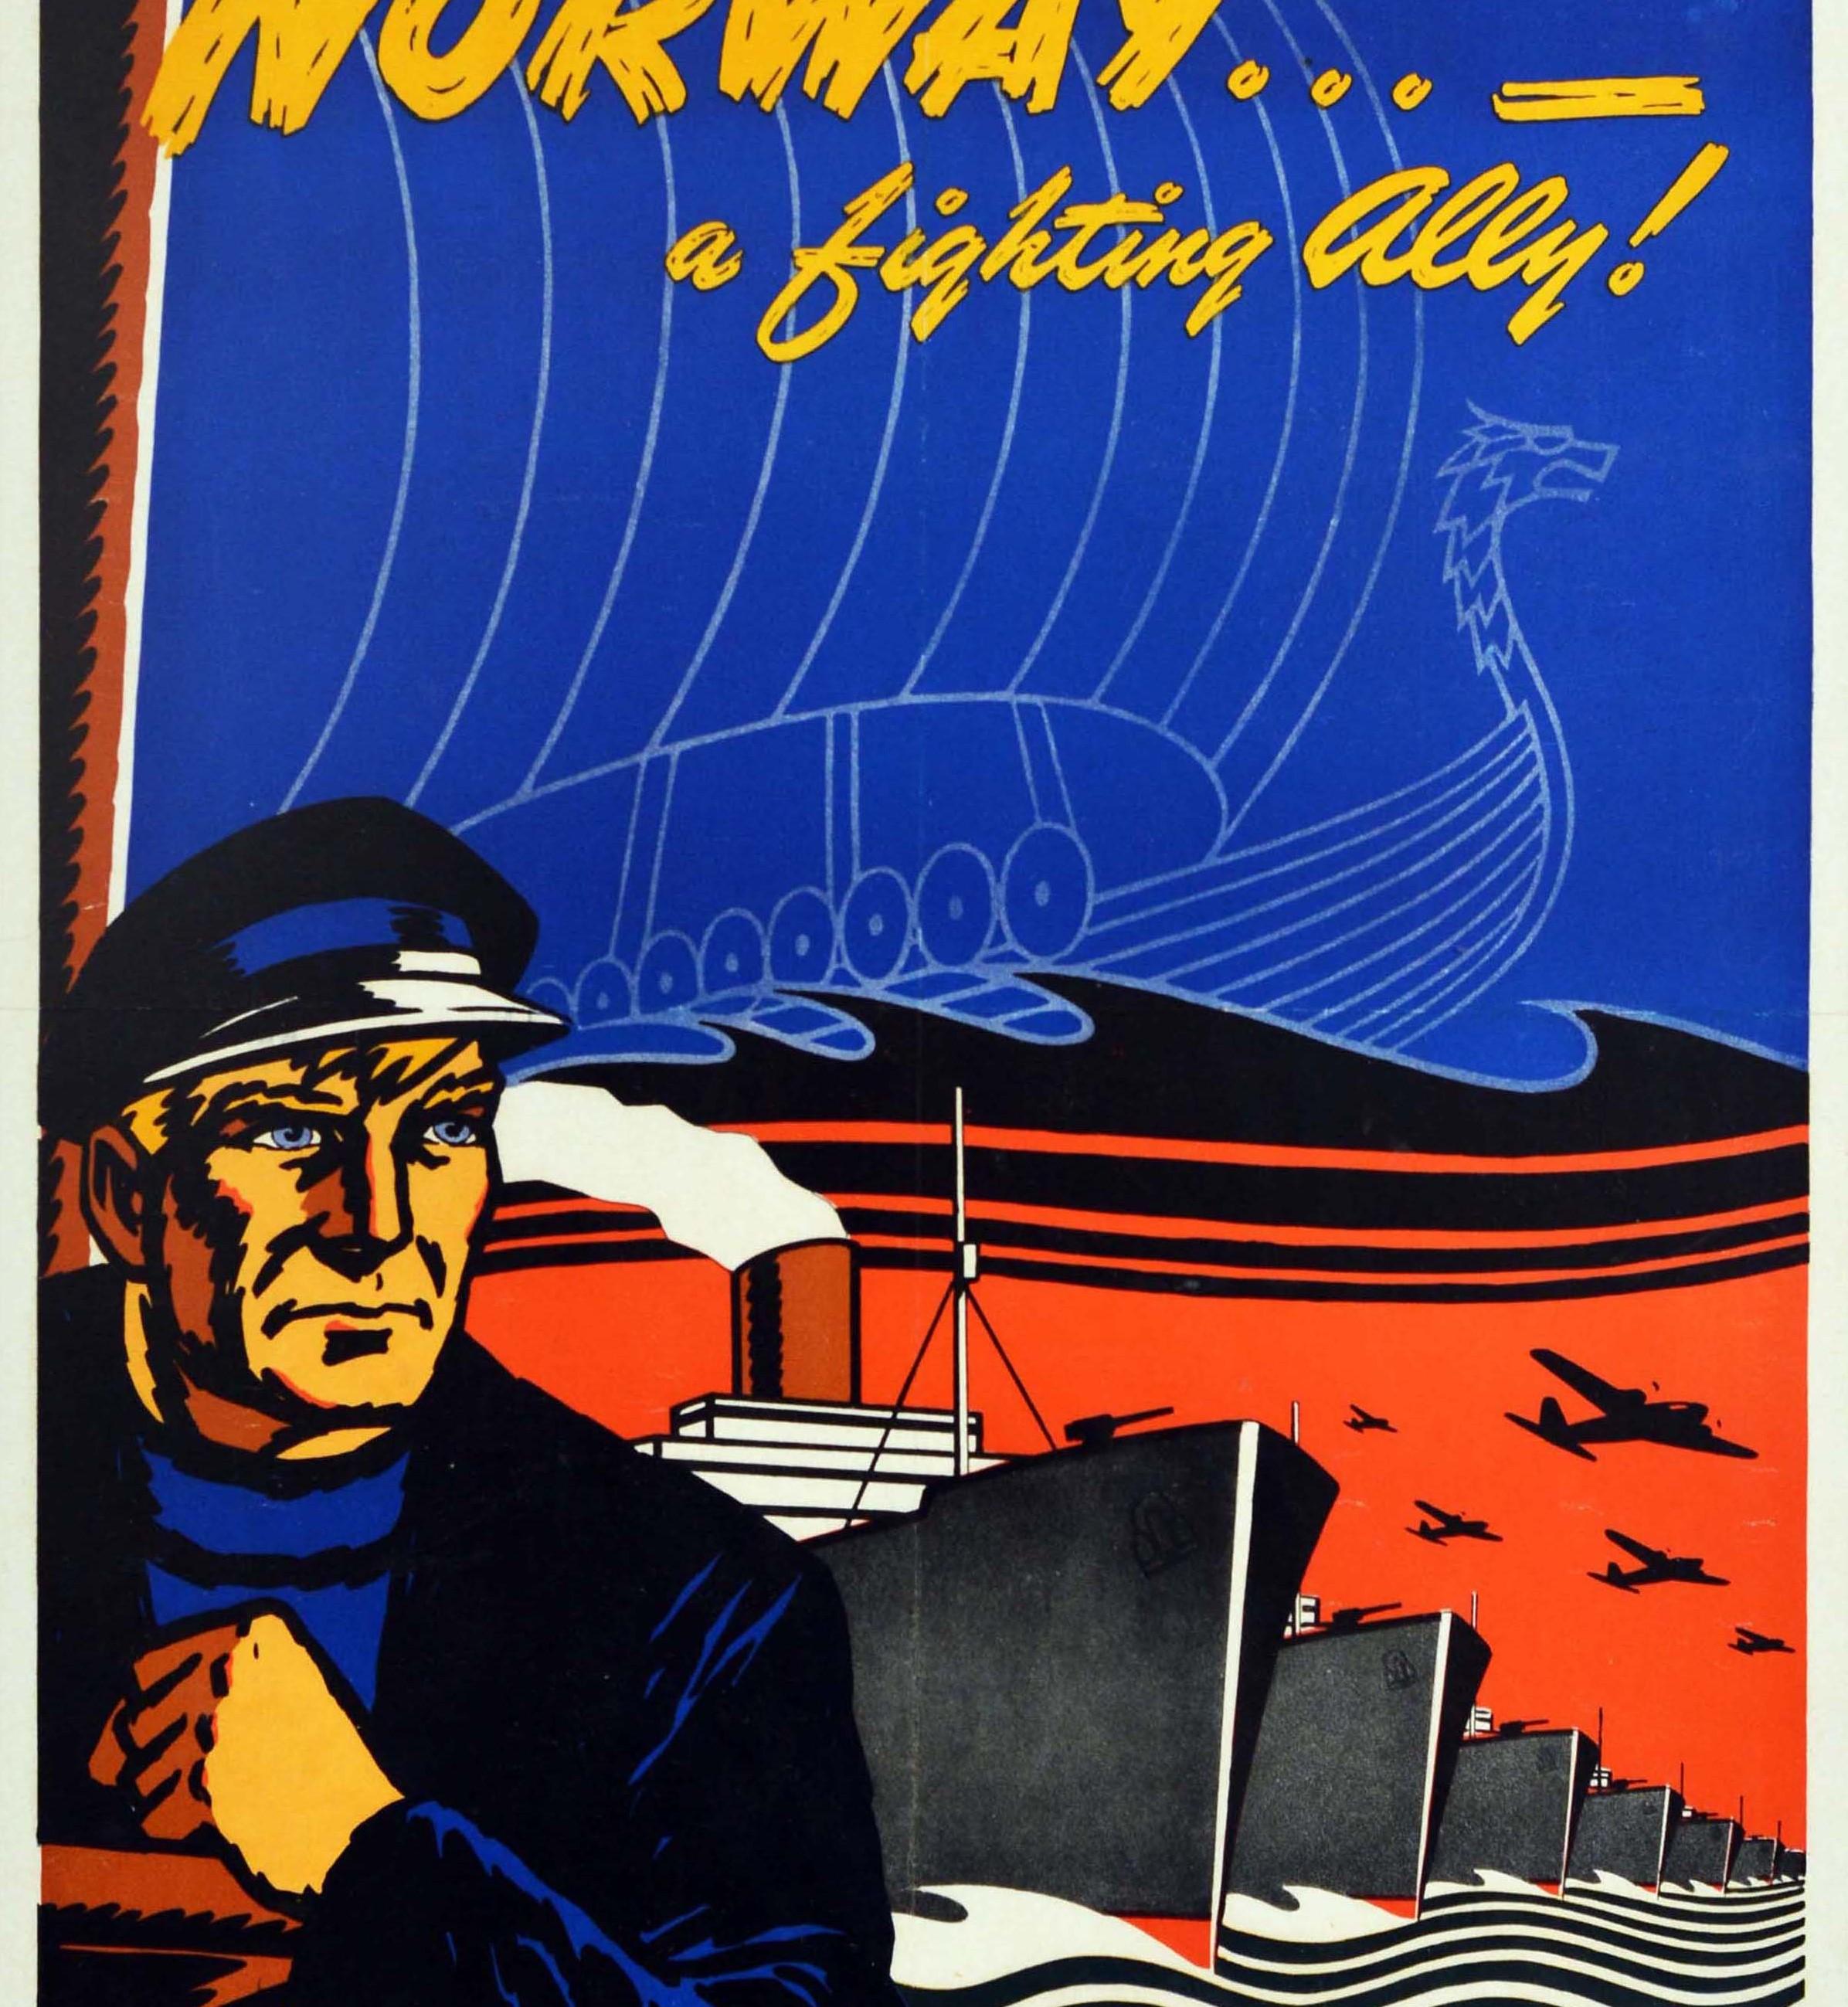 Original-Plakat aus dem Zweiten Weltkrieg für Norwegen... - A Fighting Ally! mit einem farbenfrohen Design, das einen Matrosen zeigt, der auf das Meer hinausschaut, mit einem traditionellen Wikingerbootbild über einer stilisierten Linie von